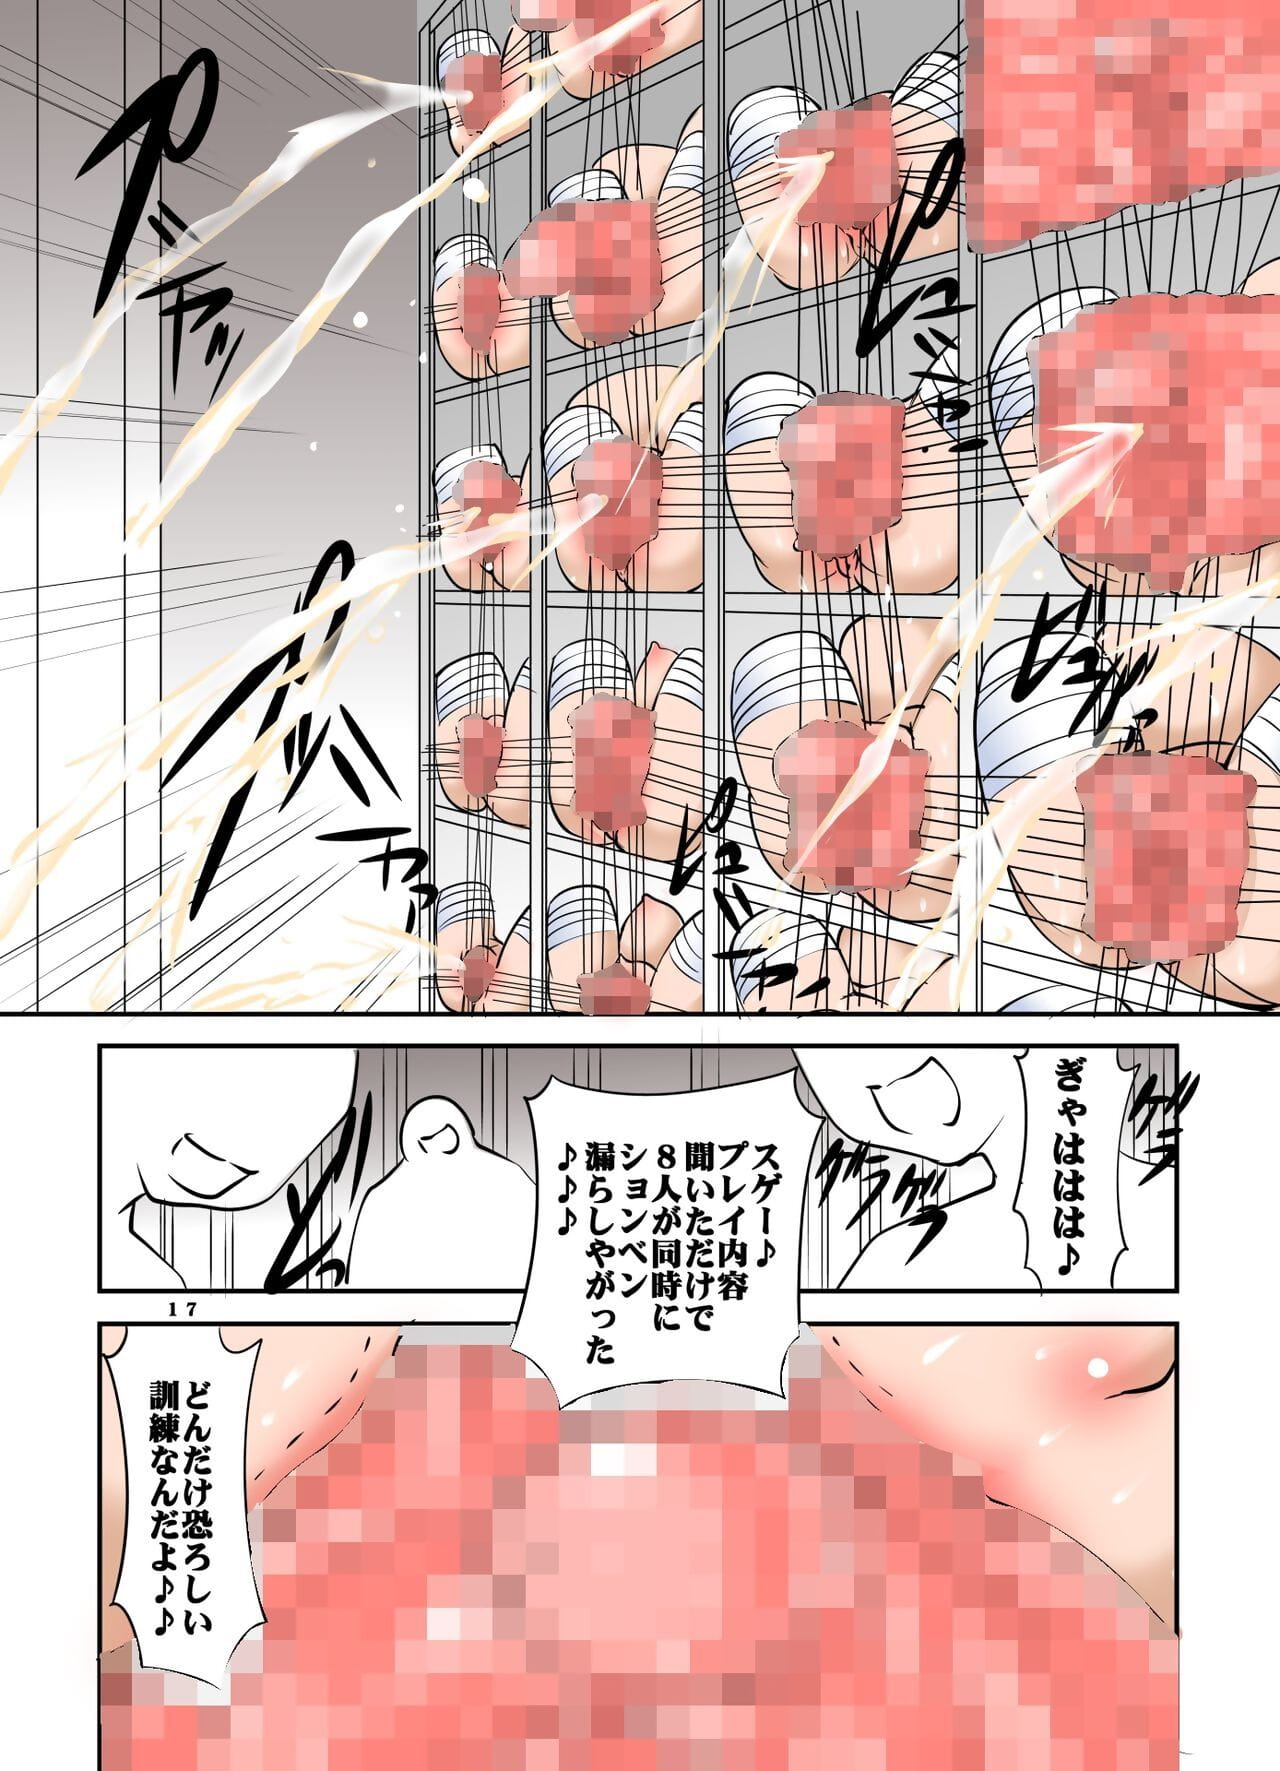 shishi setsudan shoujo goumon gyakutai kan geen meid san vol 3 page 1